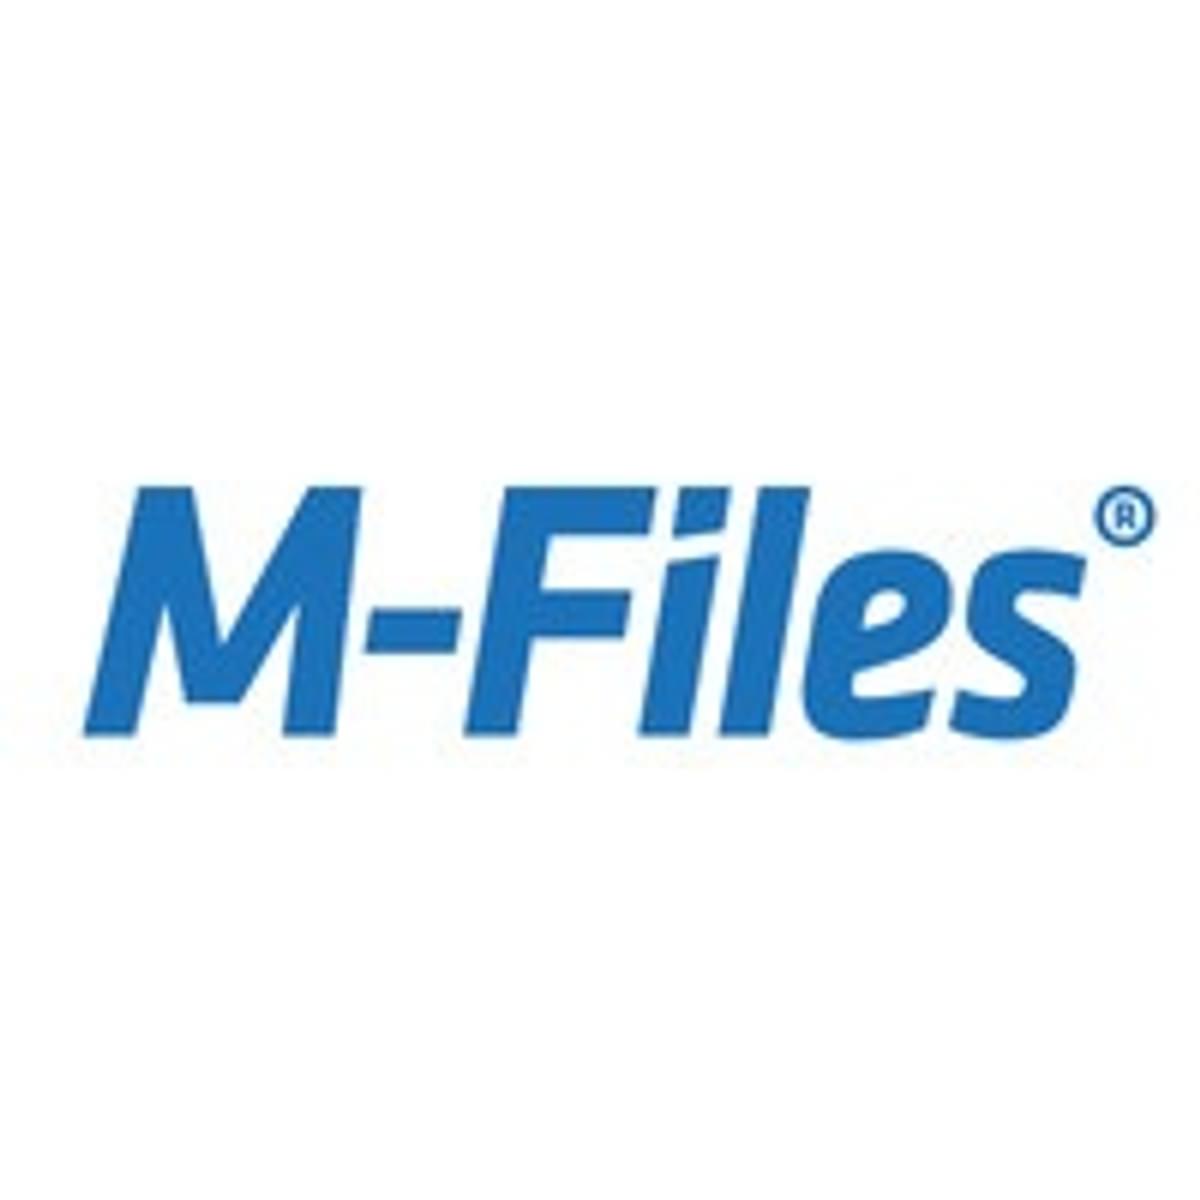 M-Files kijgt flinke kapitaalinjectie voor uitbouw intelligent platform image